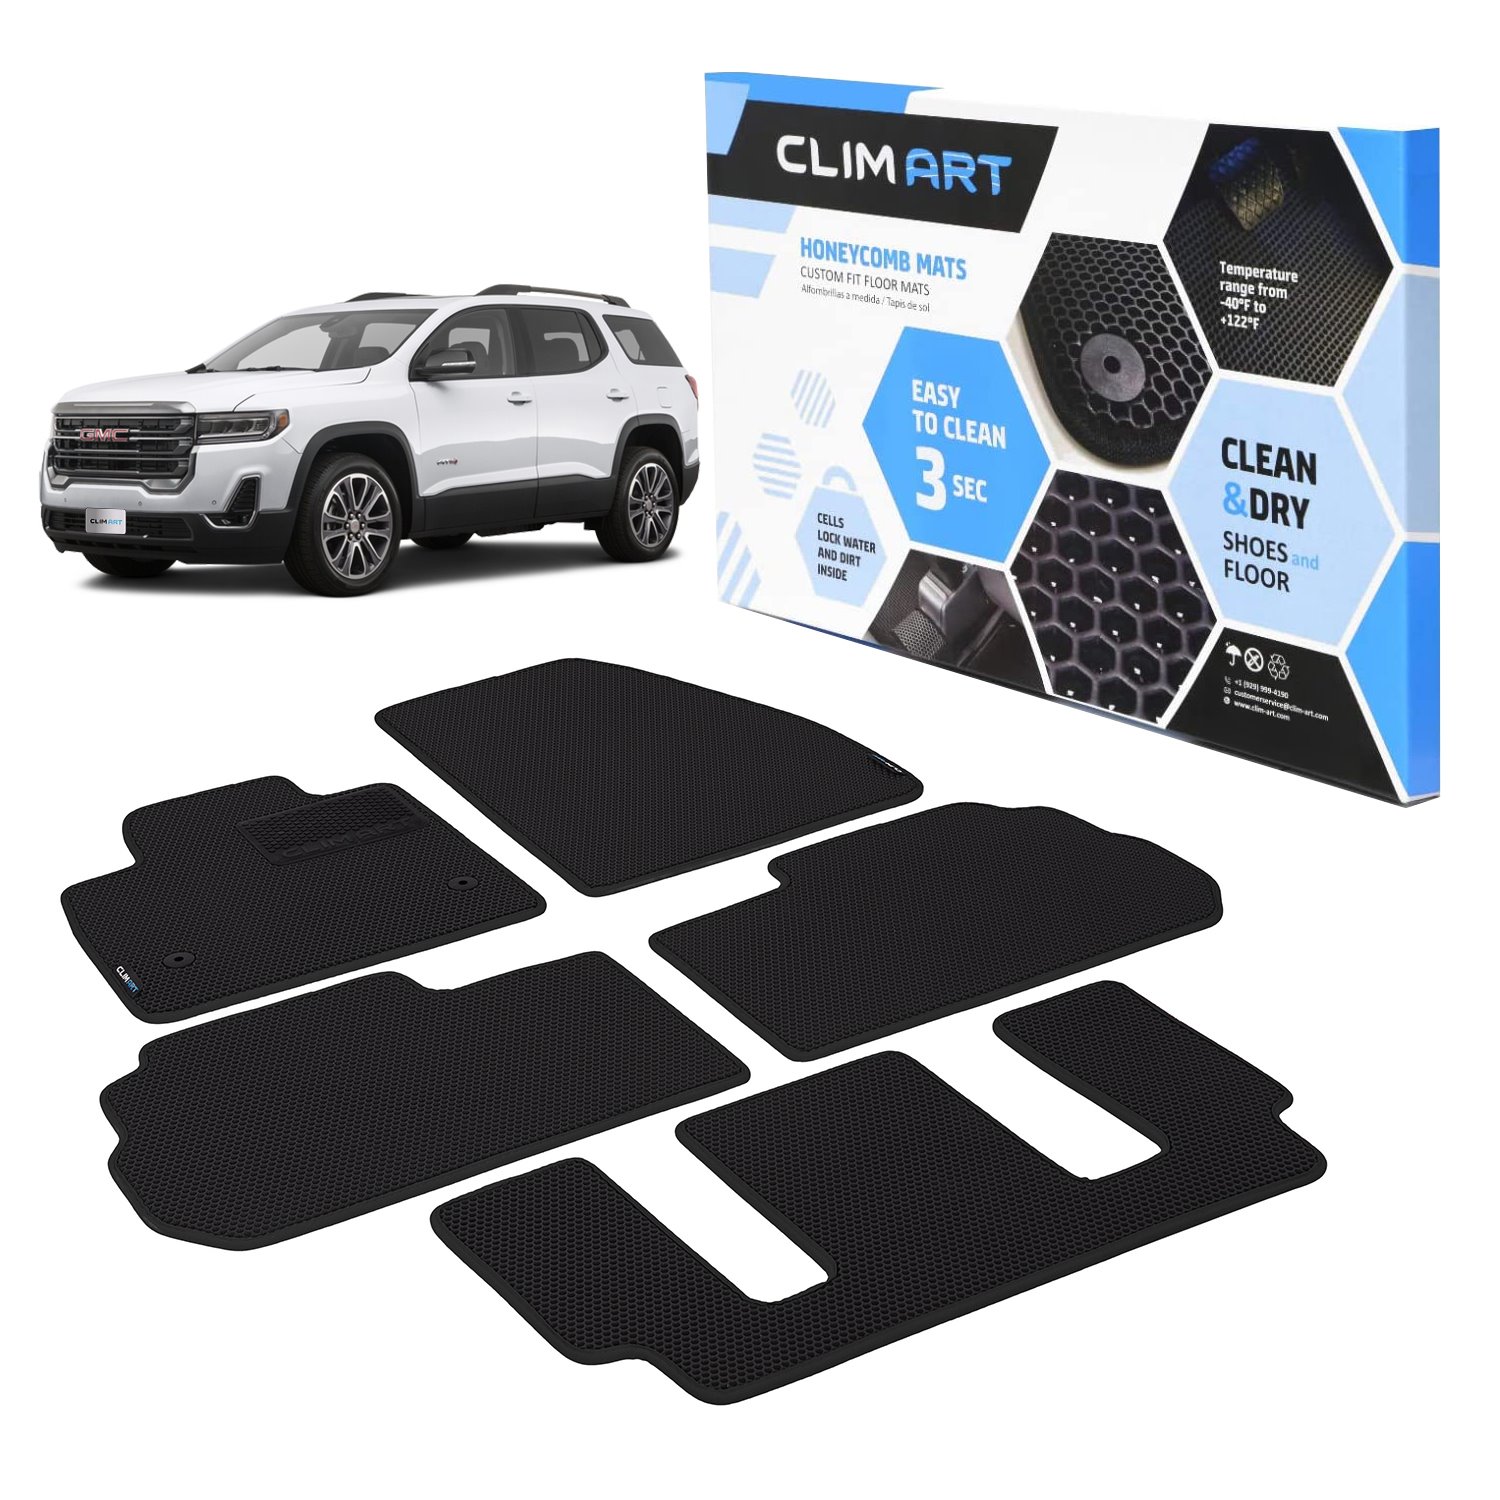 CLIM ART Honeycomb Custom Fit Floor Mats Fits Select GMC Acadia